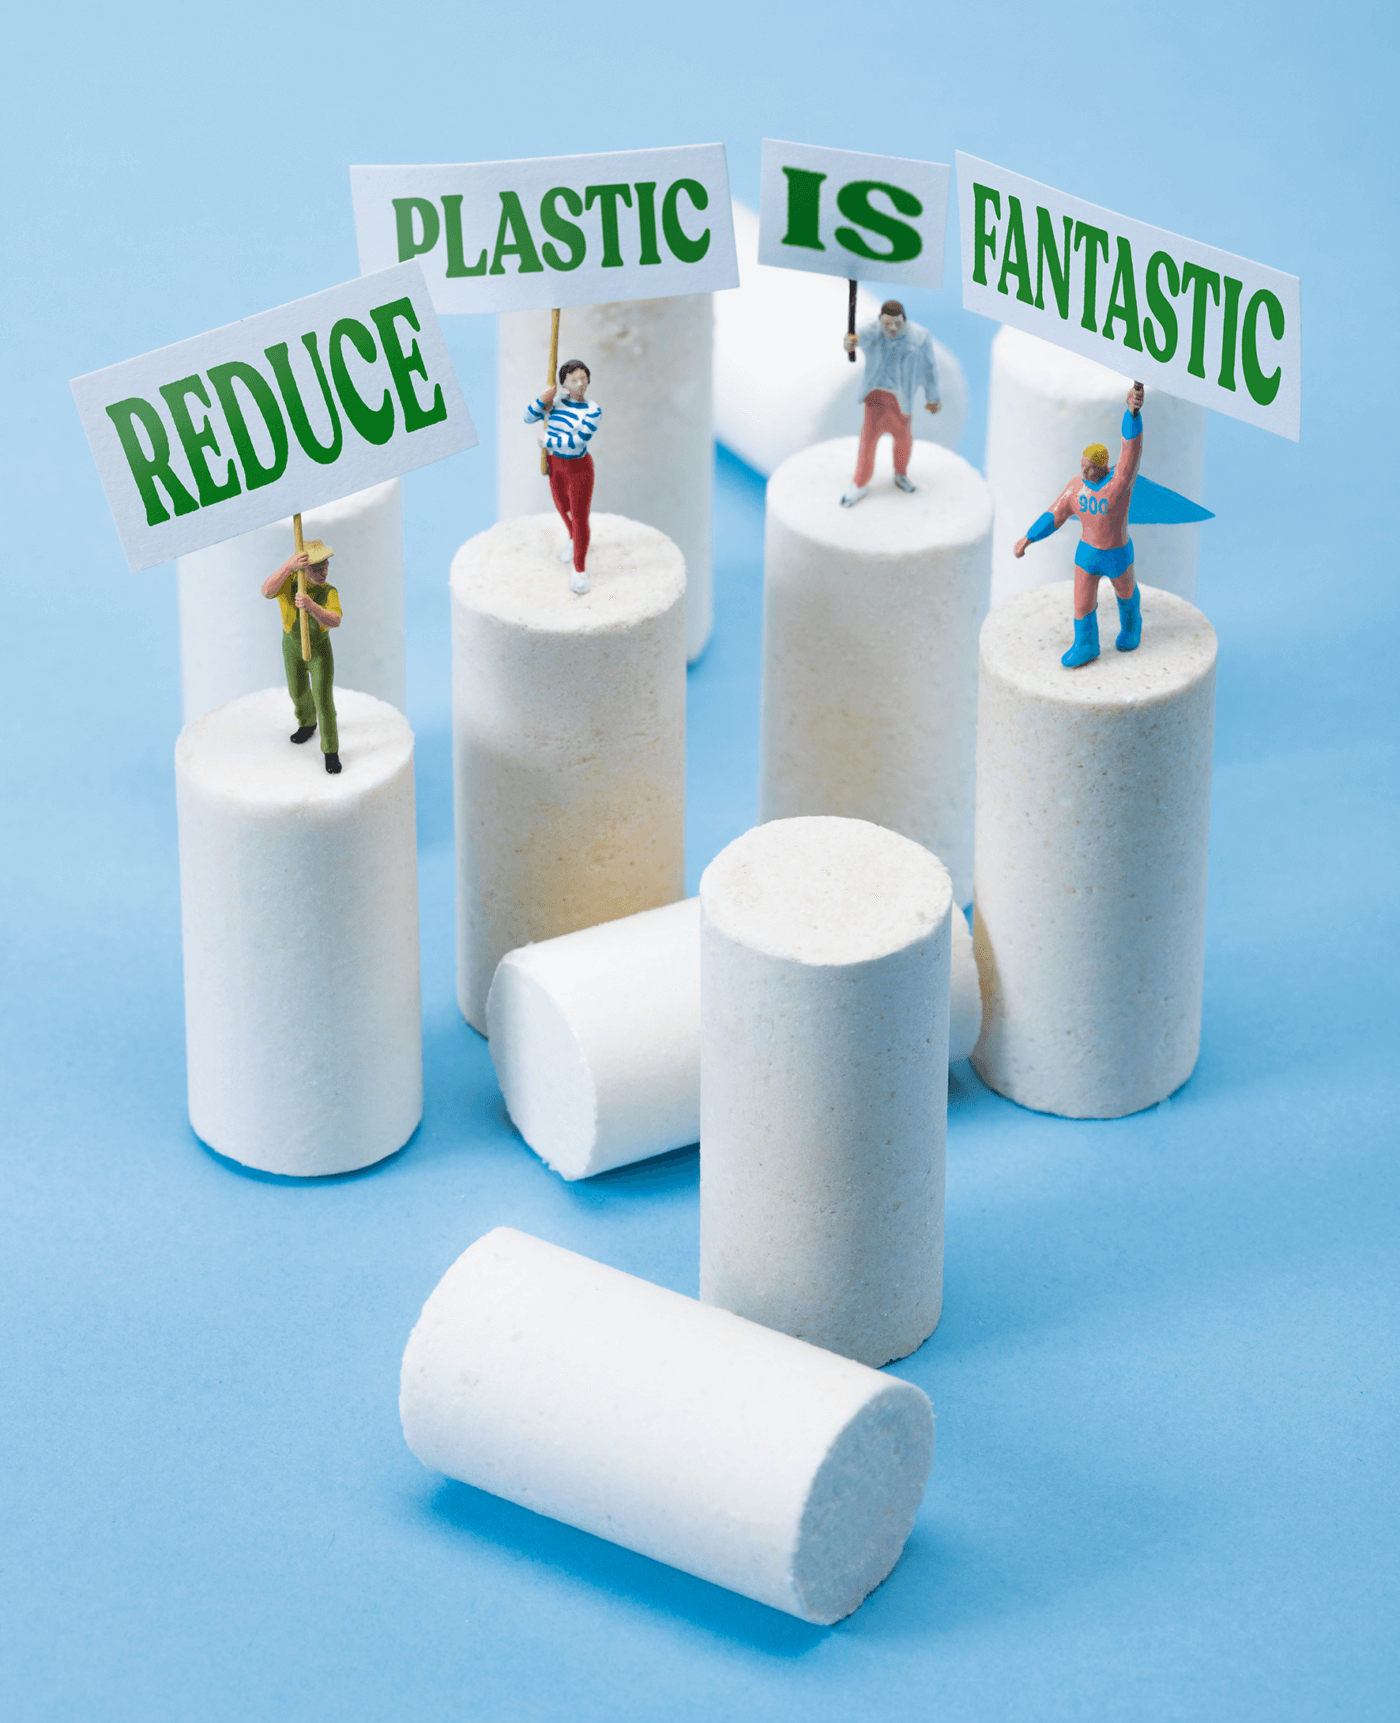 Produits d’hygiène rechargeables by 900care -Reduce plastic is fantastic